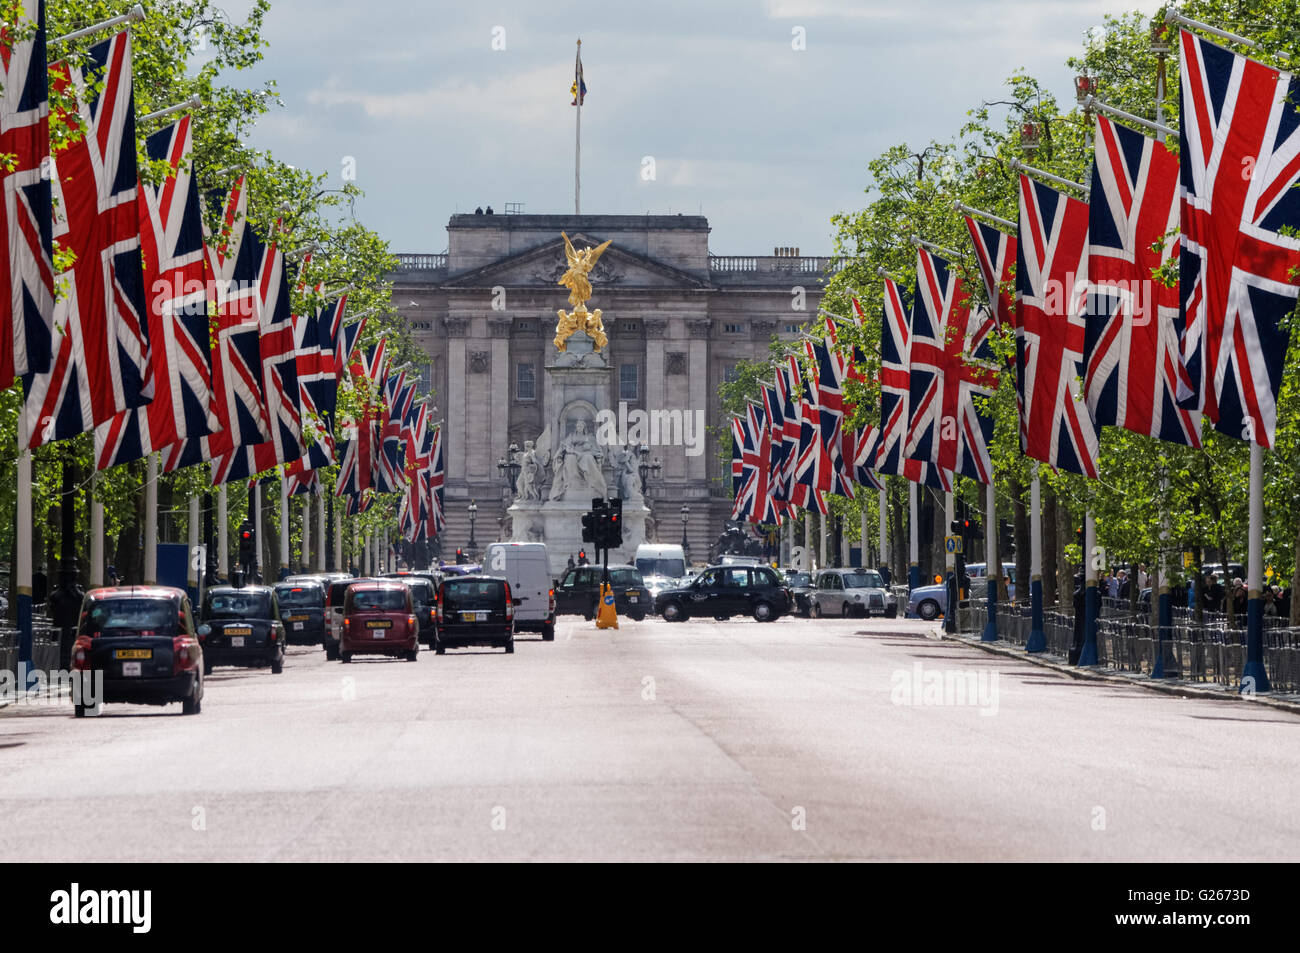 Union Jack flags hanging on The Mall, London England United Kingdom UK Stock Photo